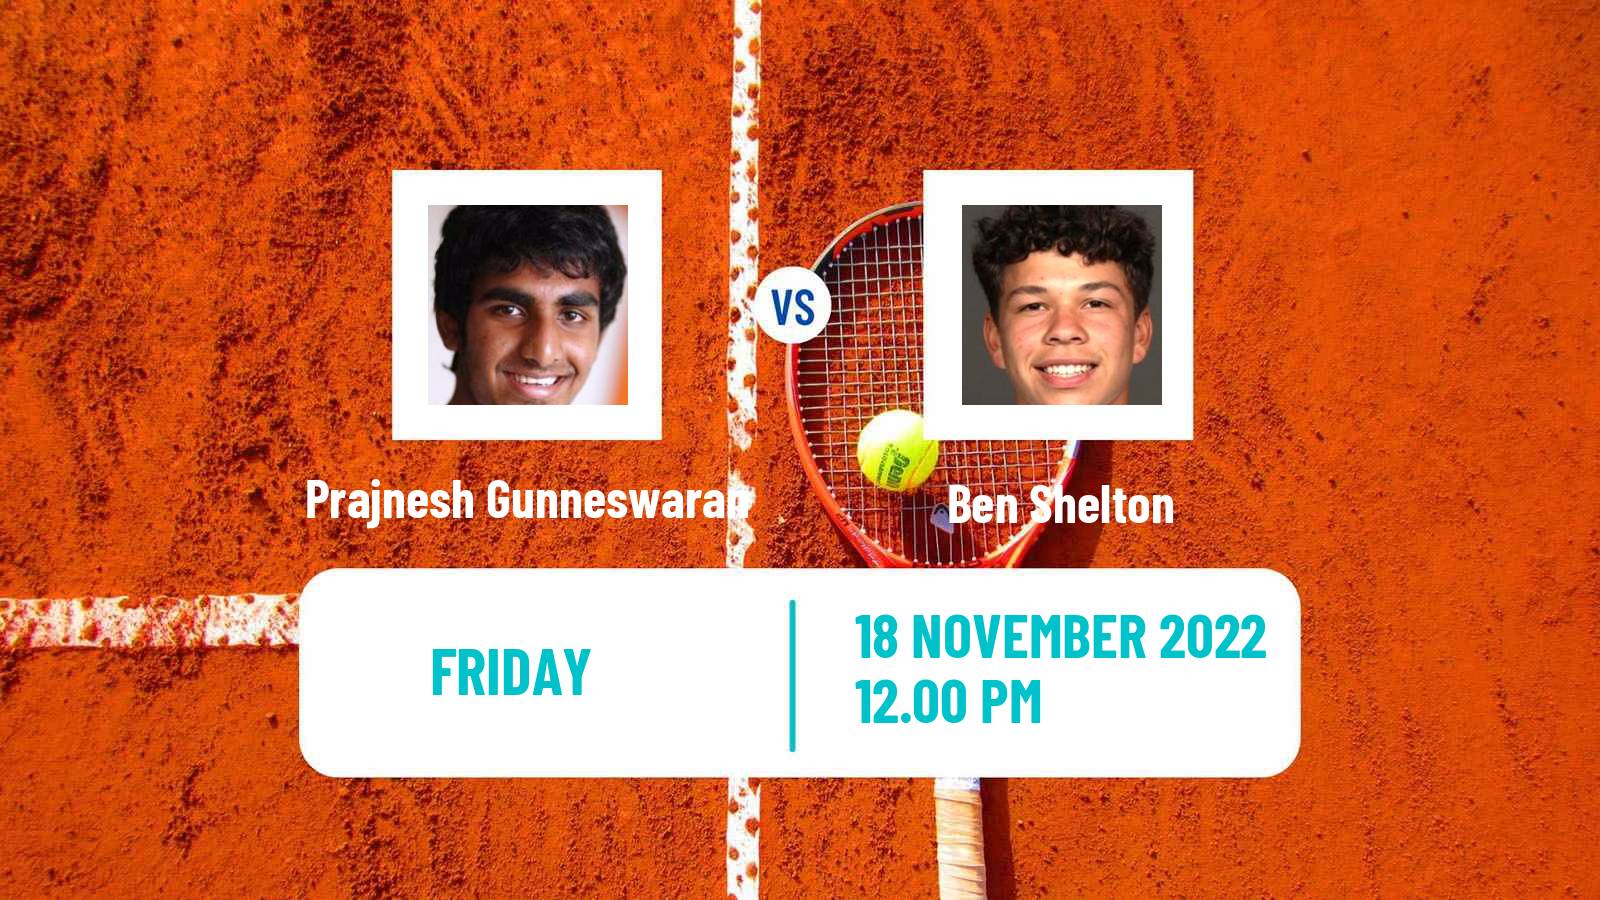 Tennis ATP Challenger Prajnesh Gunneswaran - Ben Shelton